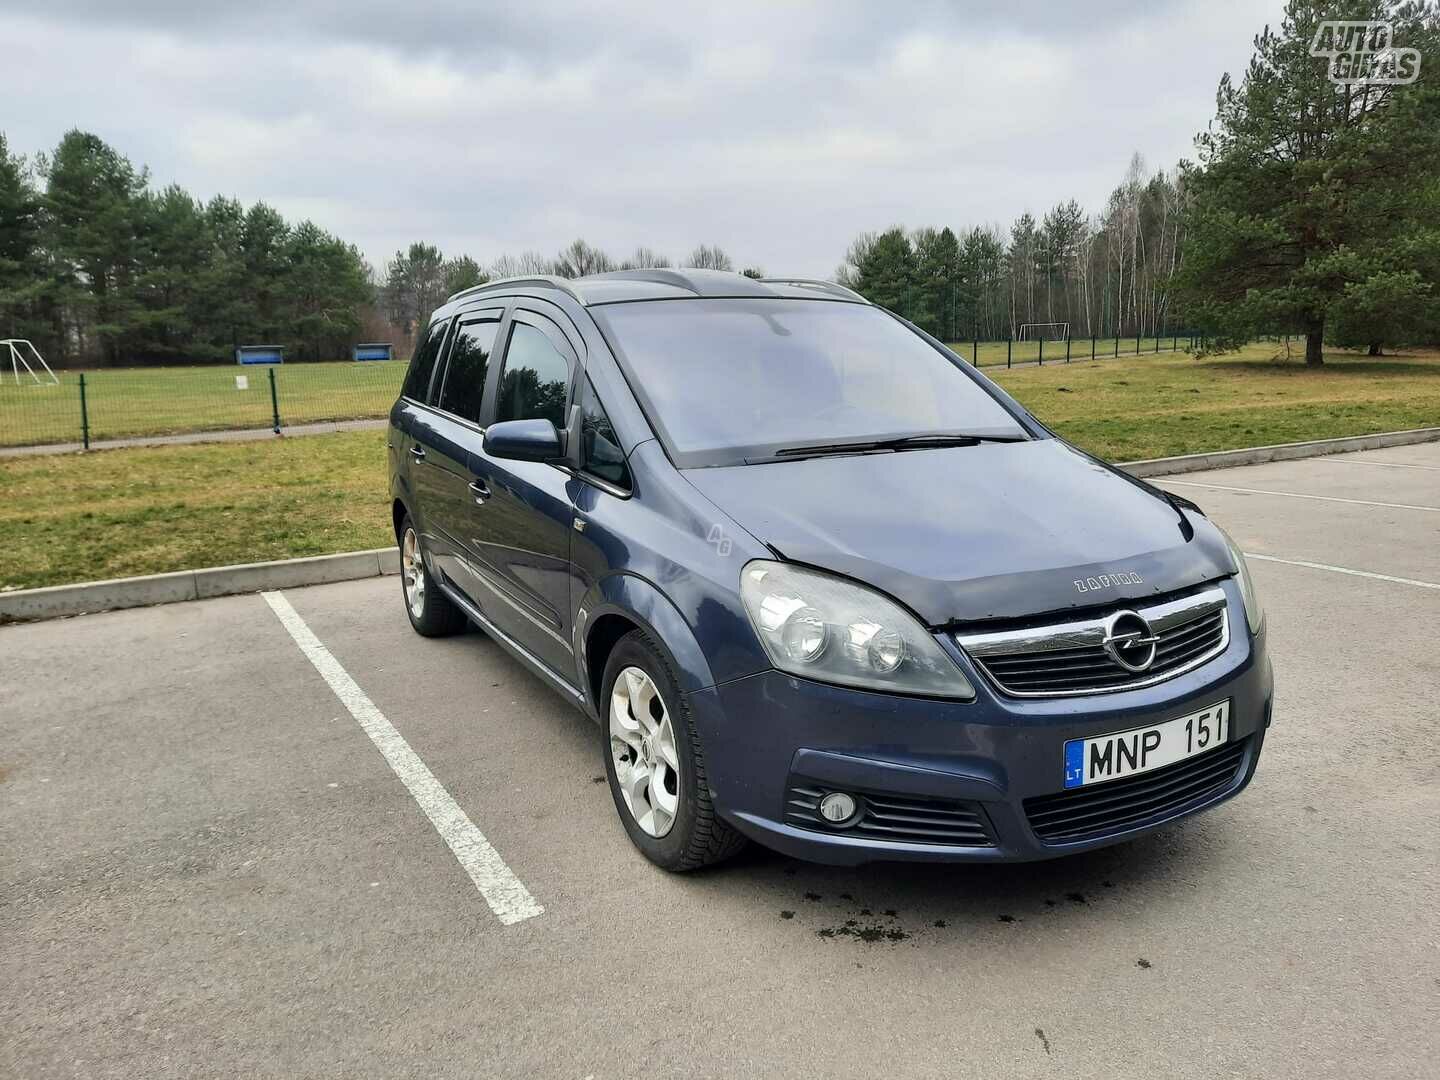 Opel Zafira CDTI 2006 m